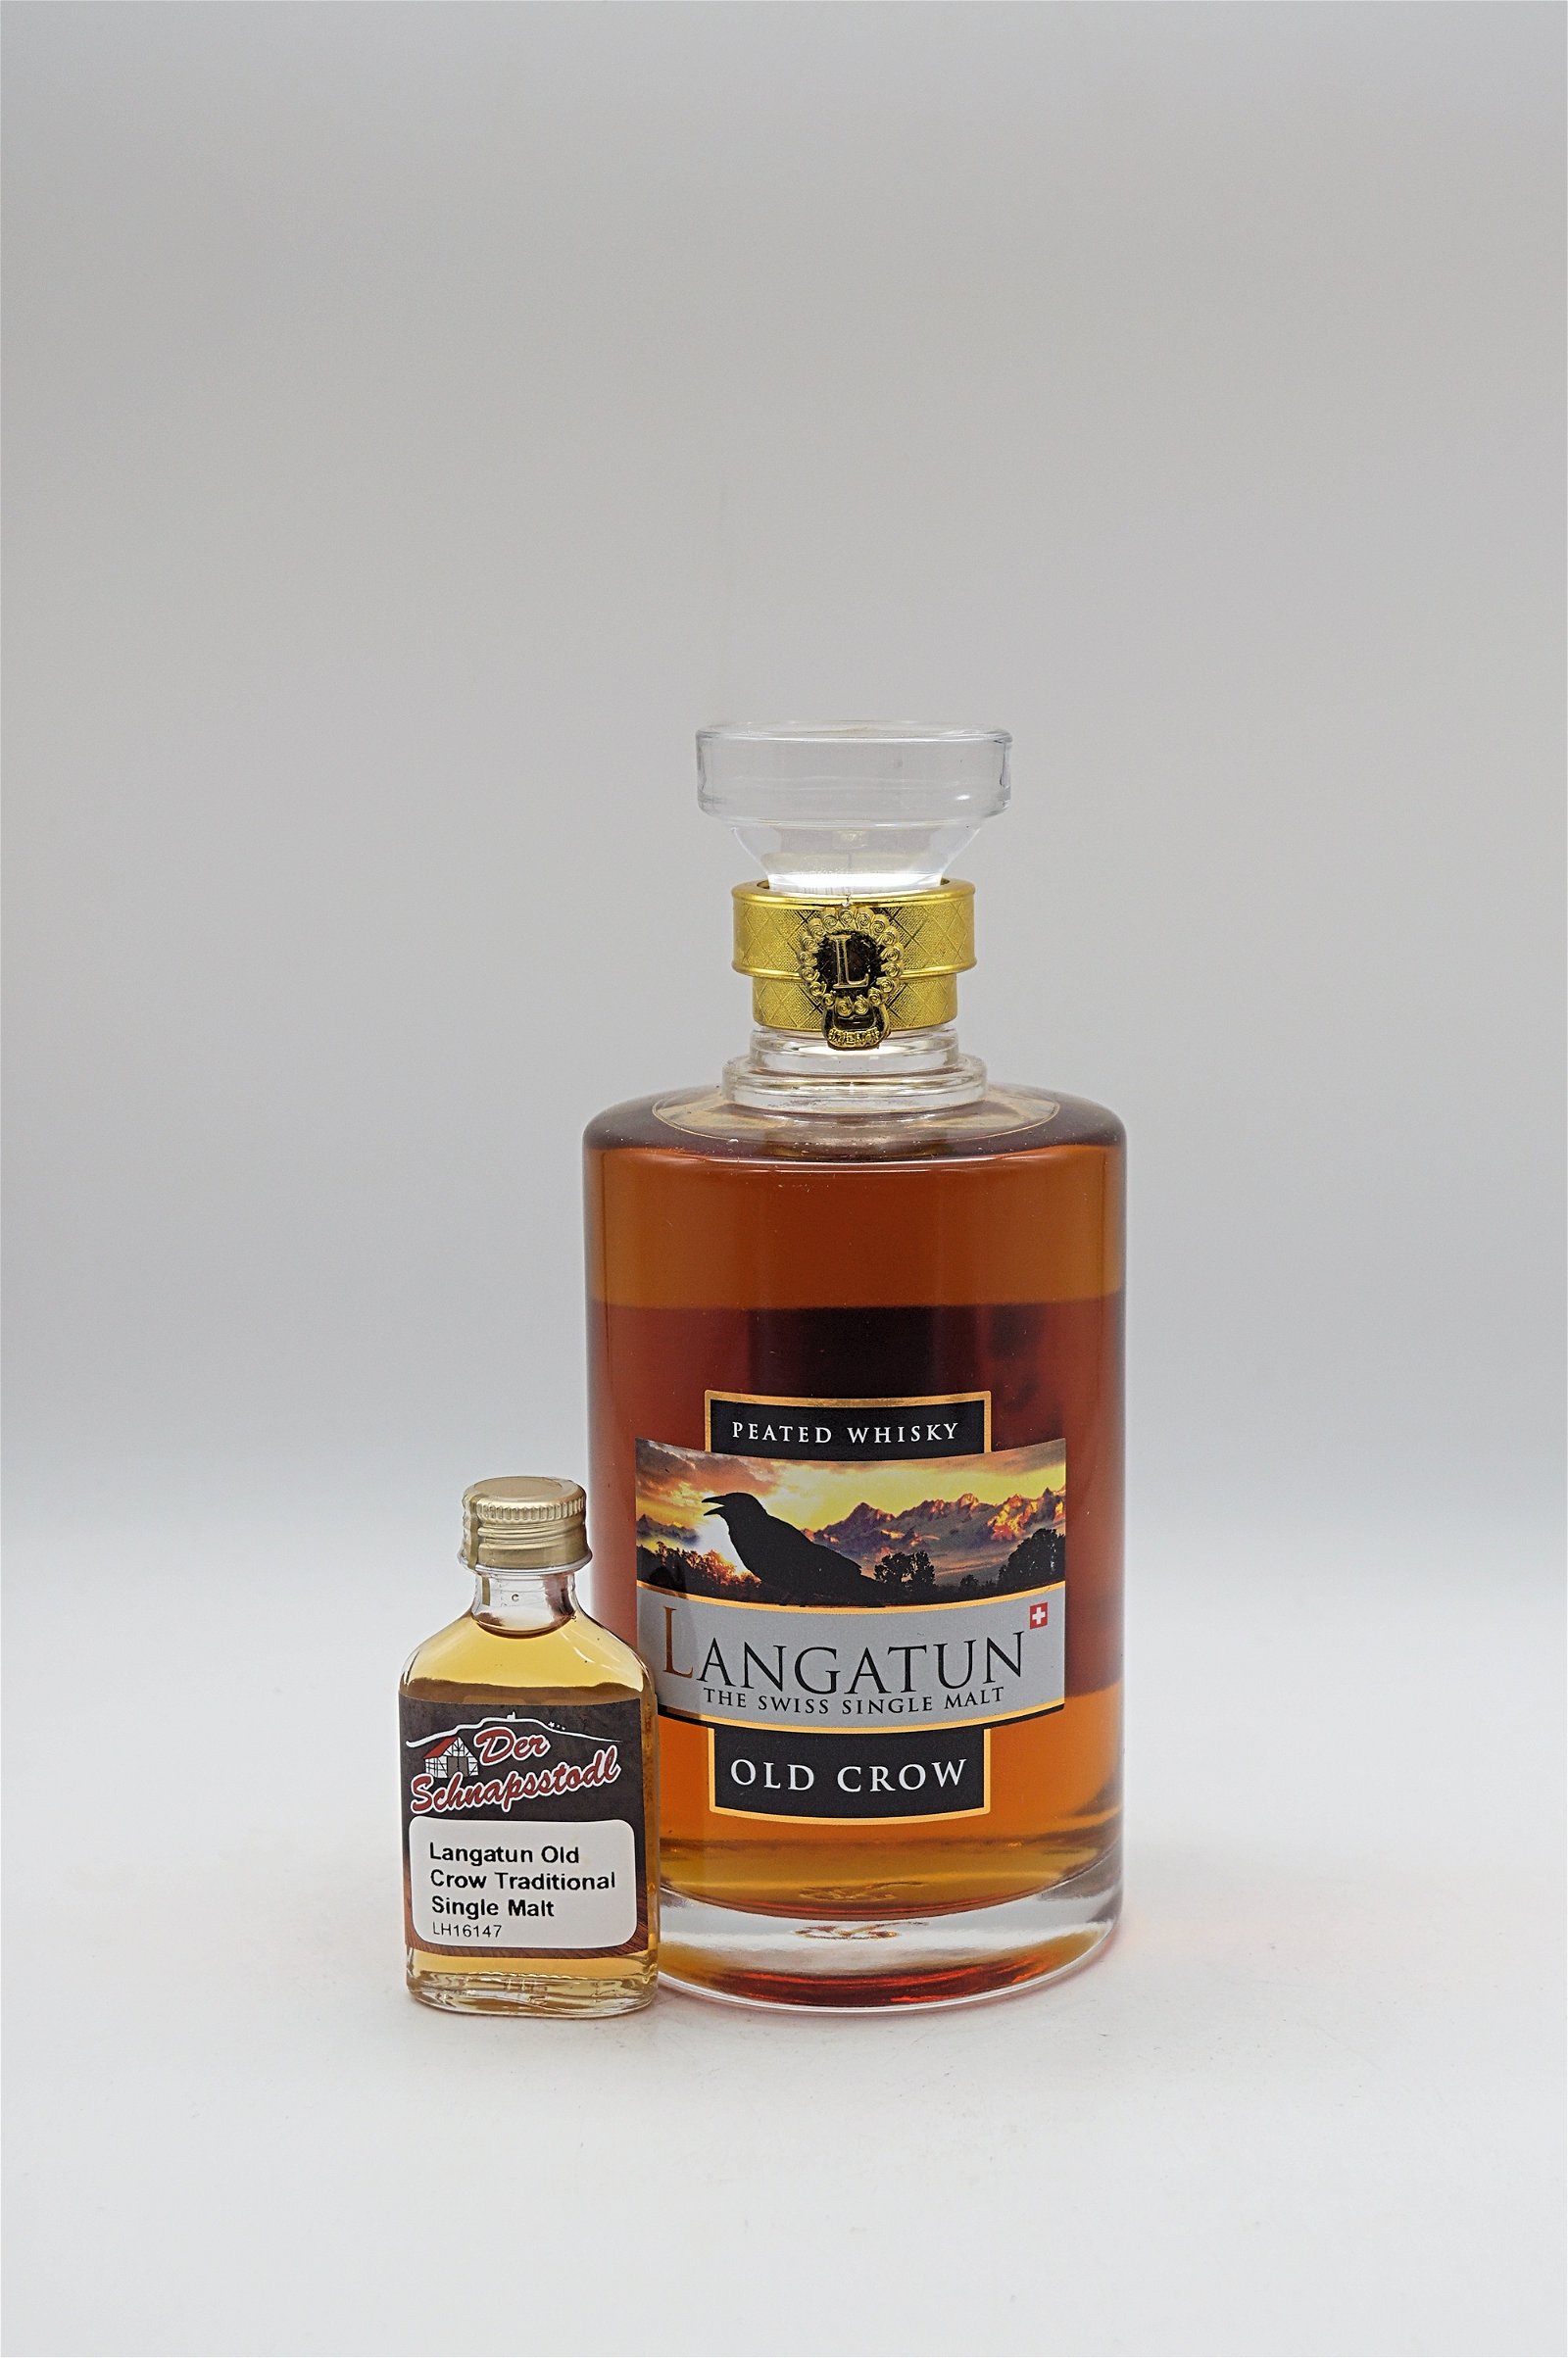 Langatun Old Crow Single Malt Whisky 20ml Sample